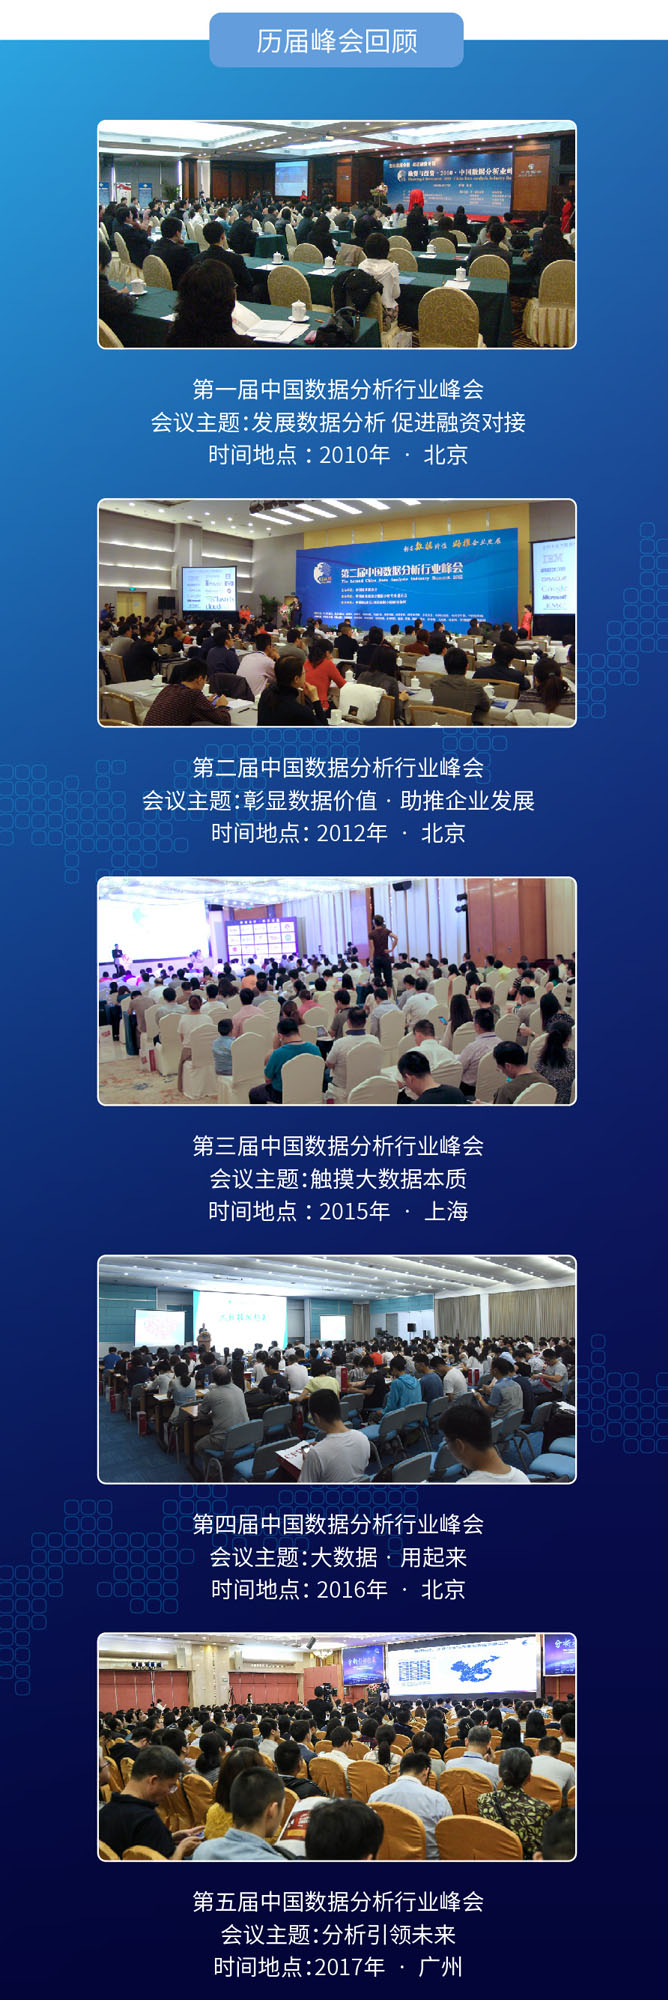 2018大数据应用与融合创新大会暨第六届中国数据分析行业峰会